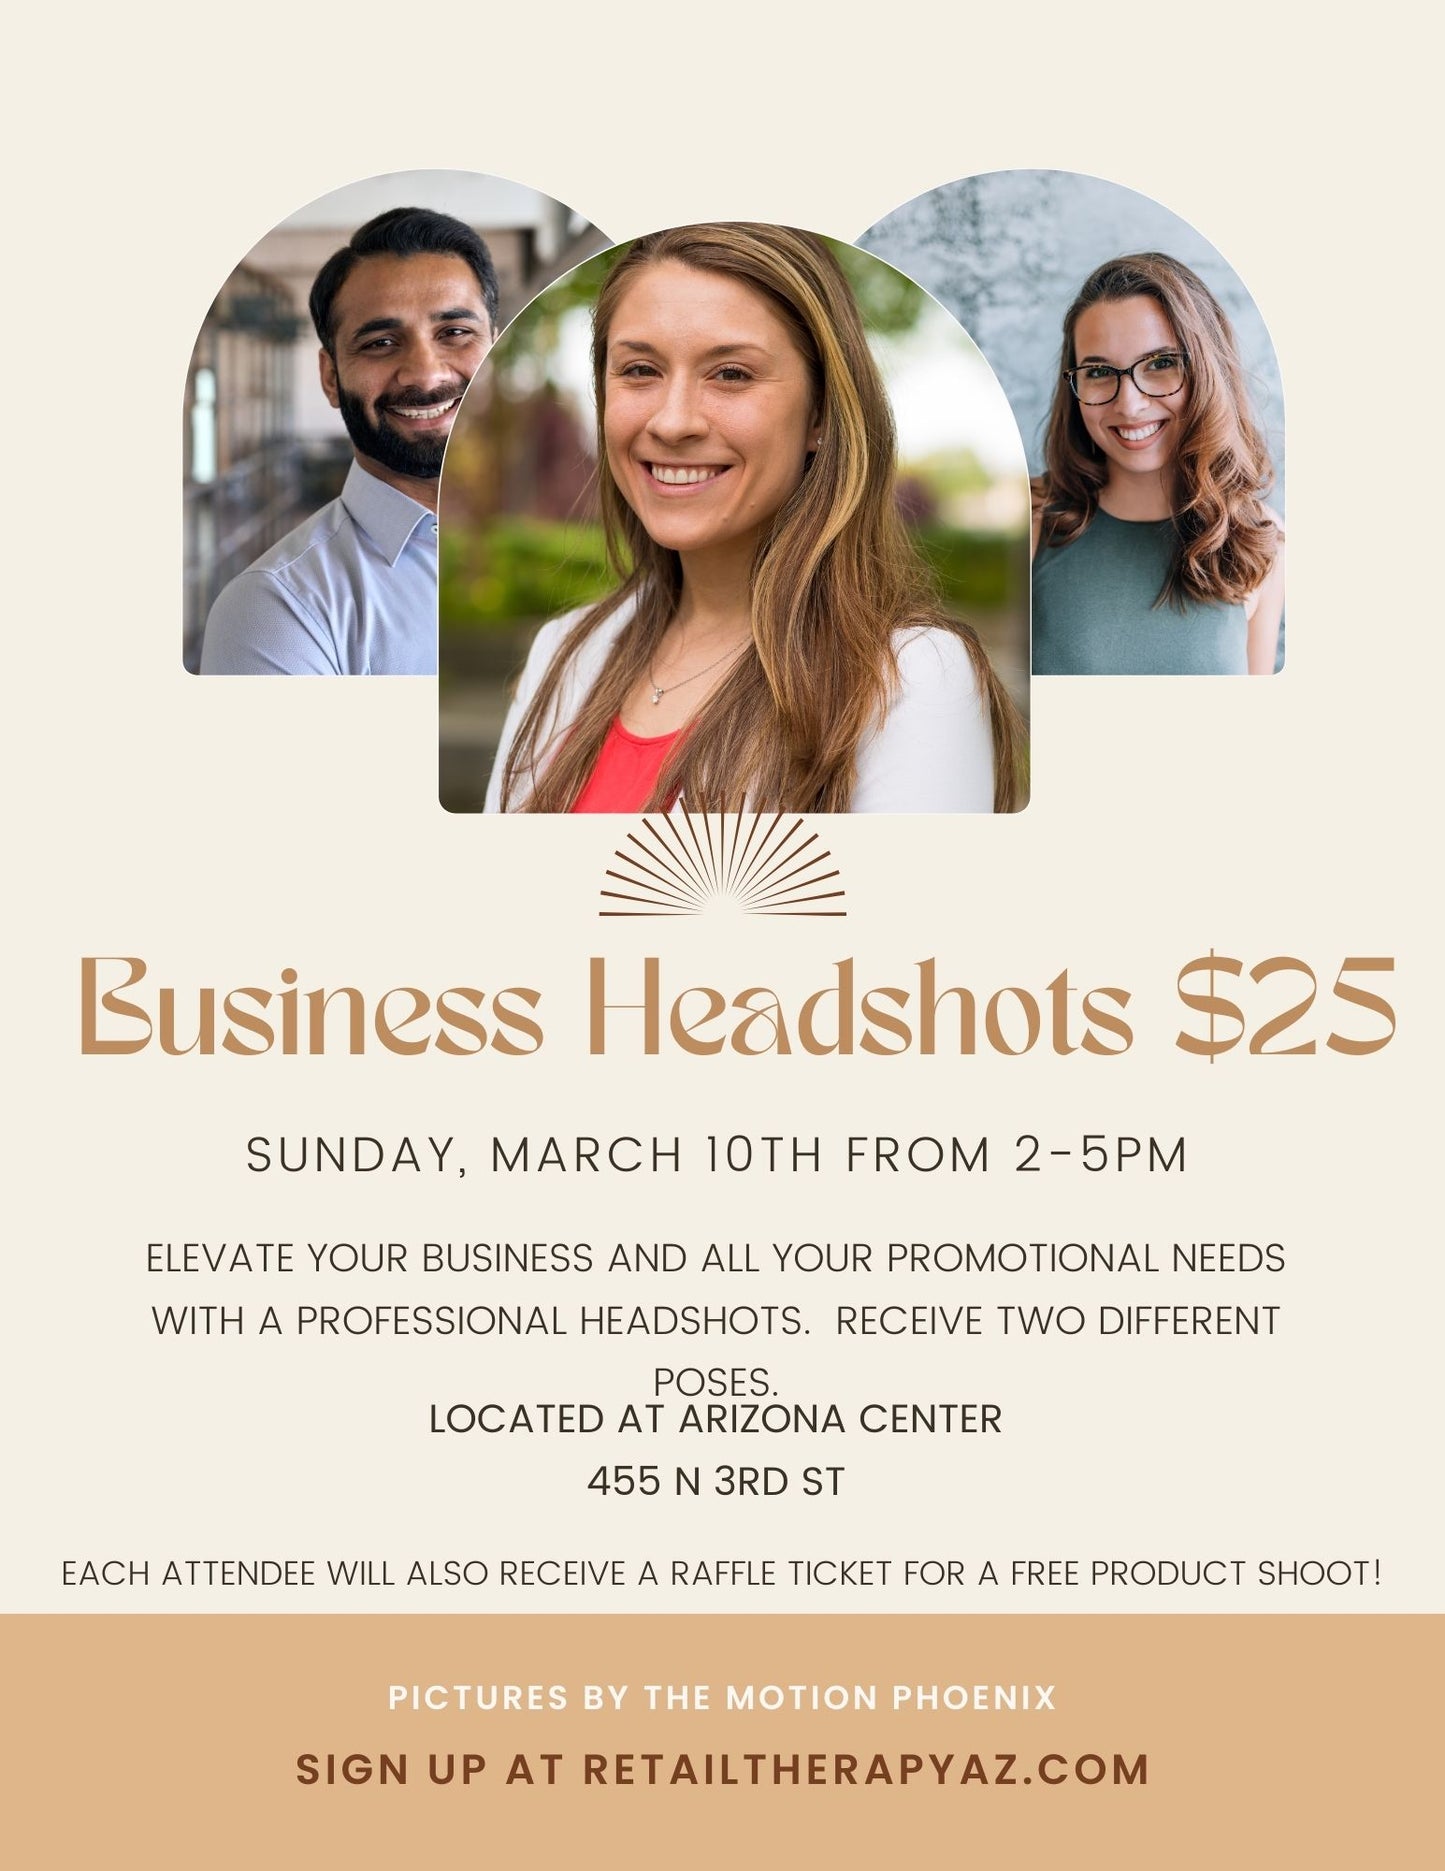 $25 Small Business Headshots